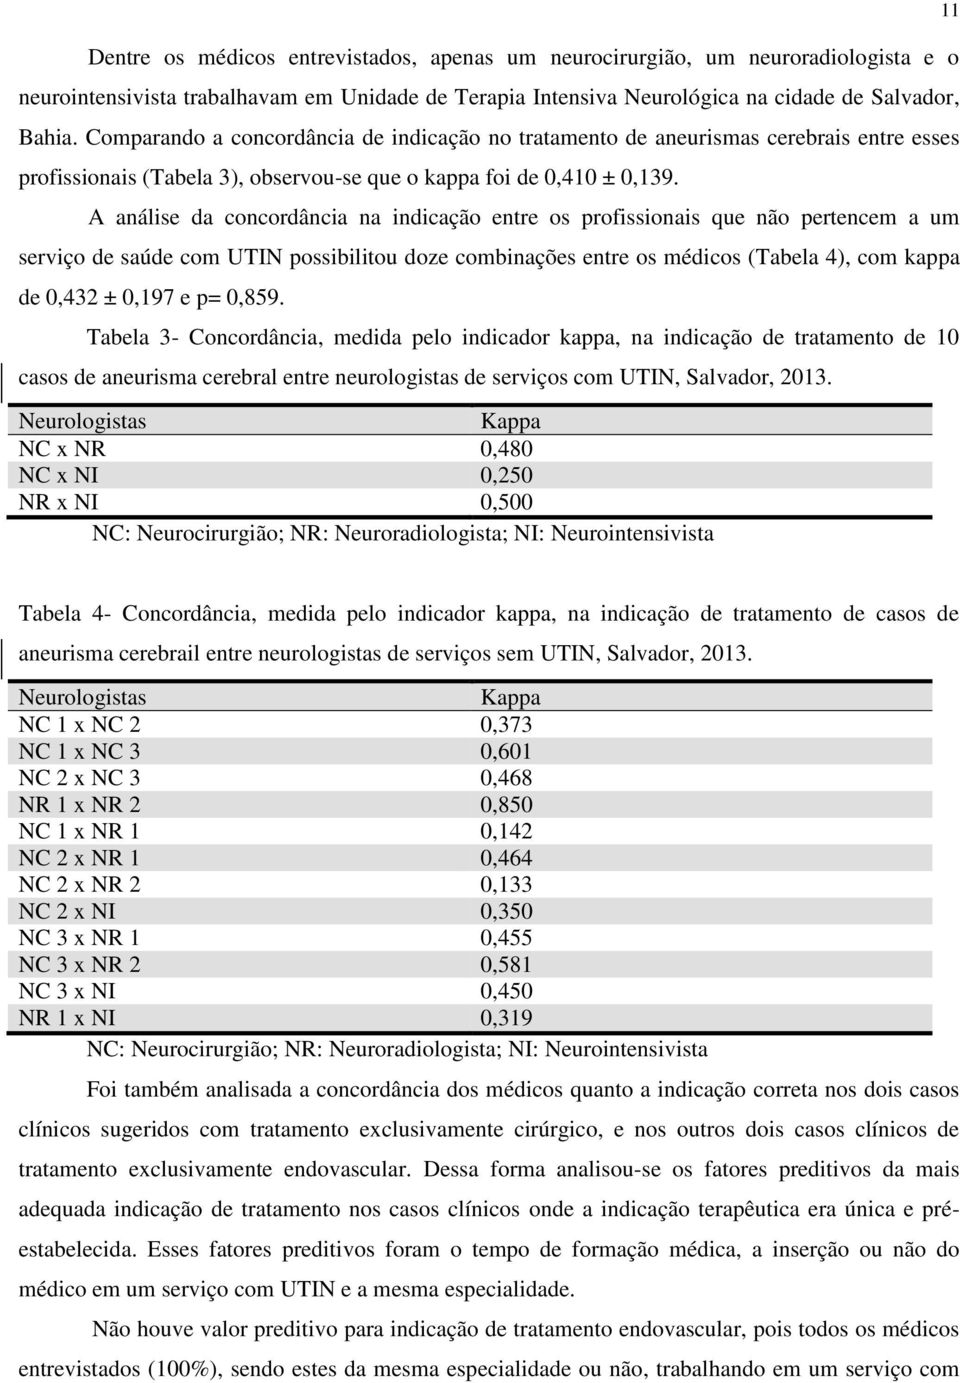 A análise da concordância na indicação entre os profissionais que não pertencem a um serviço de saúde com UTIN possibilitou doze combinações entre os médicos (Tabela 4), com kappa de 0,432 ± 0,197 e